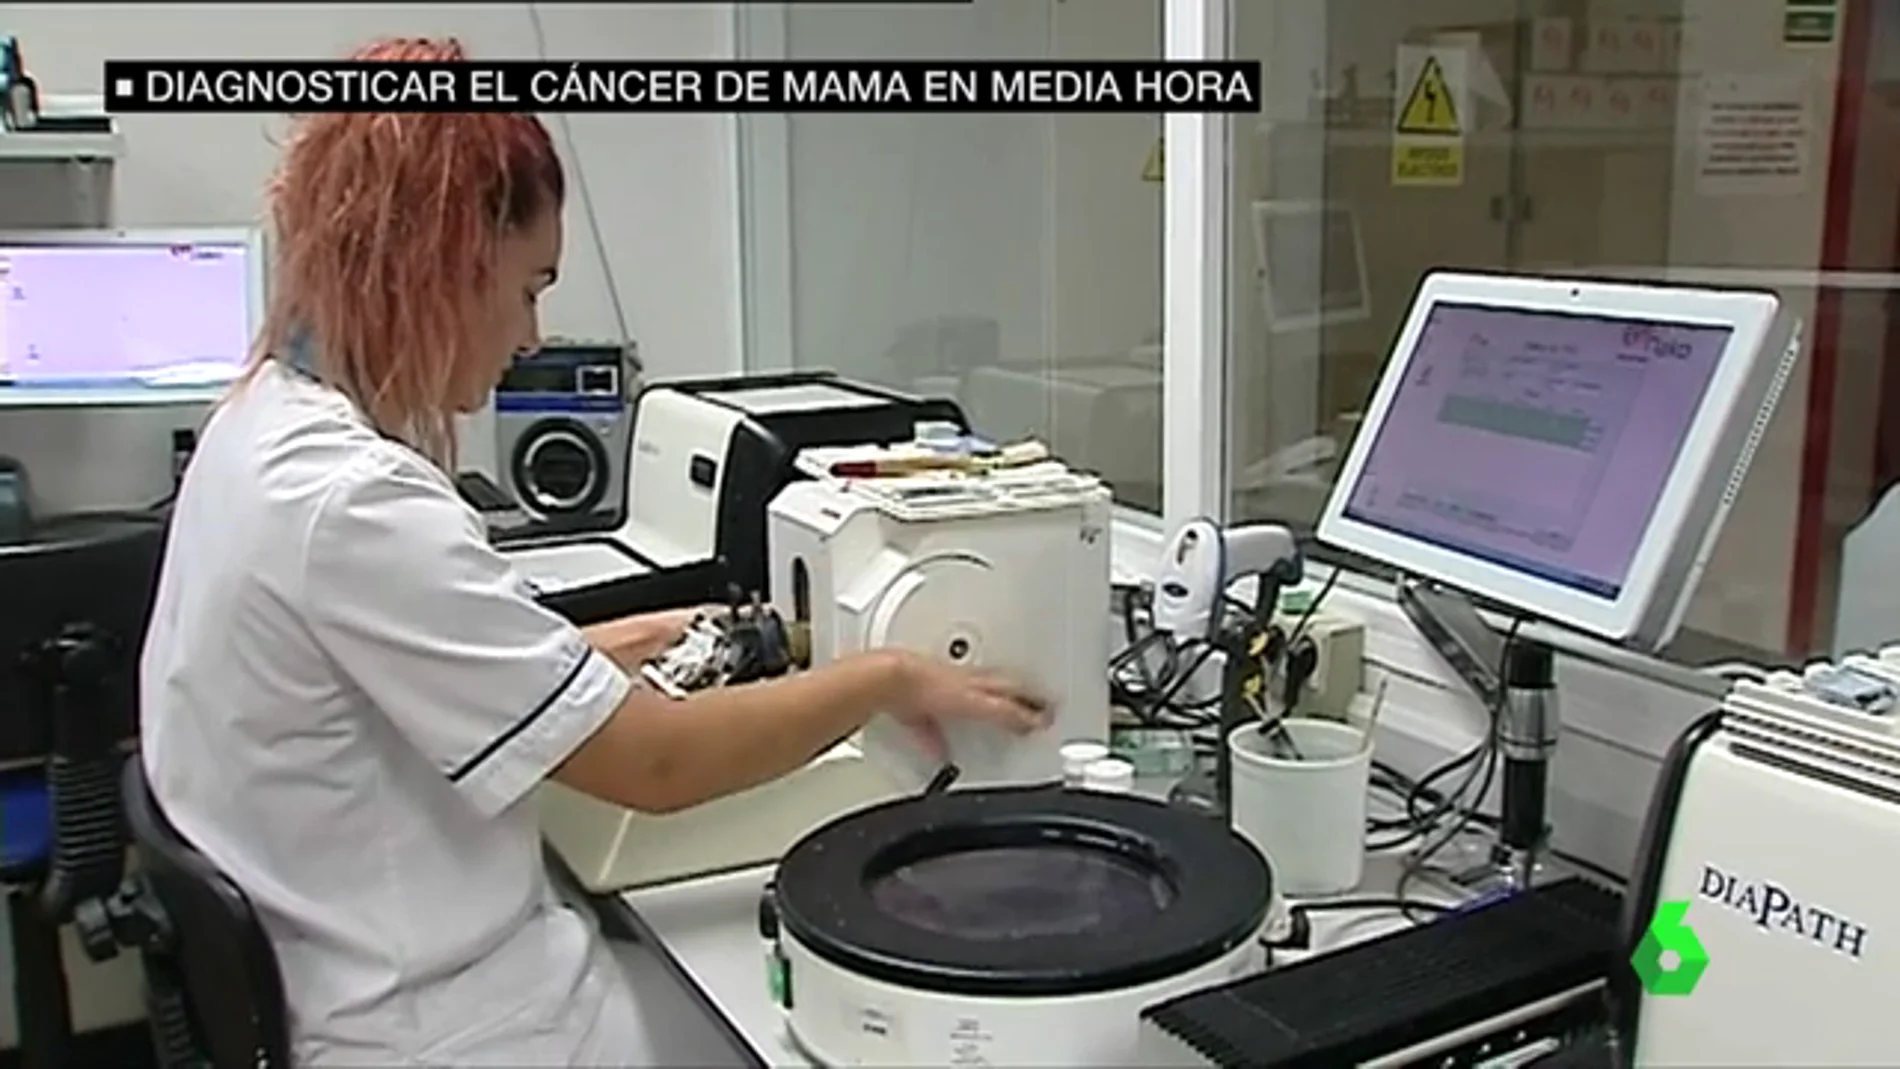 'La biopsia rápida', un nuevo sistema que permite identificar el cáncer de mama en 30 minutos